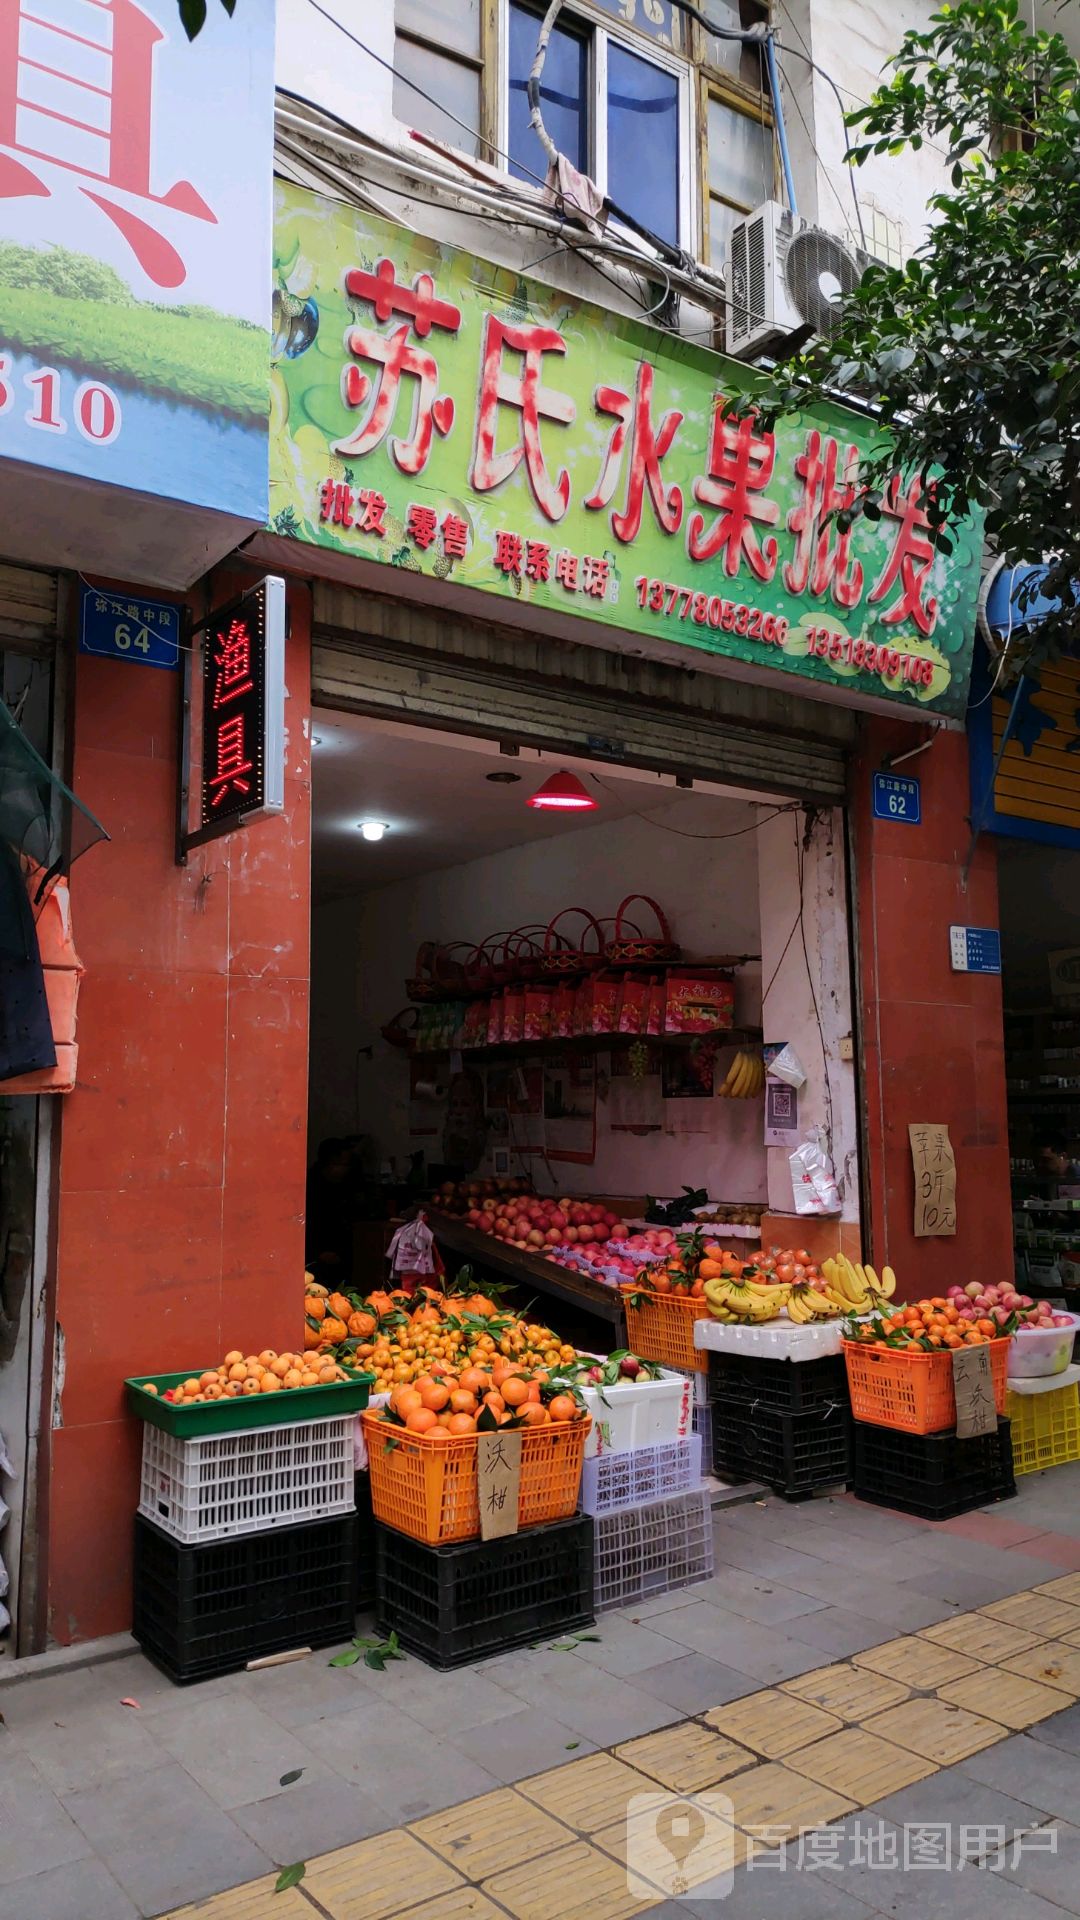 盐亭县标签: 水果批发市场 购物 批发市场  苏氏水果批共多少人浏览